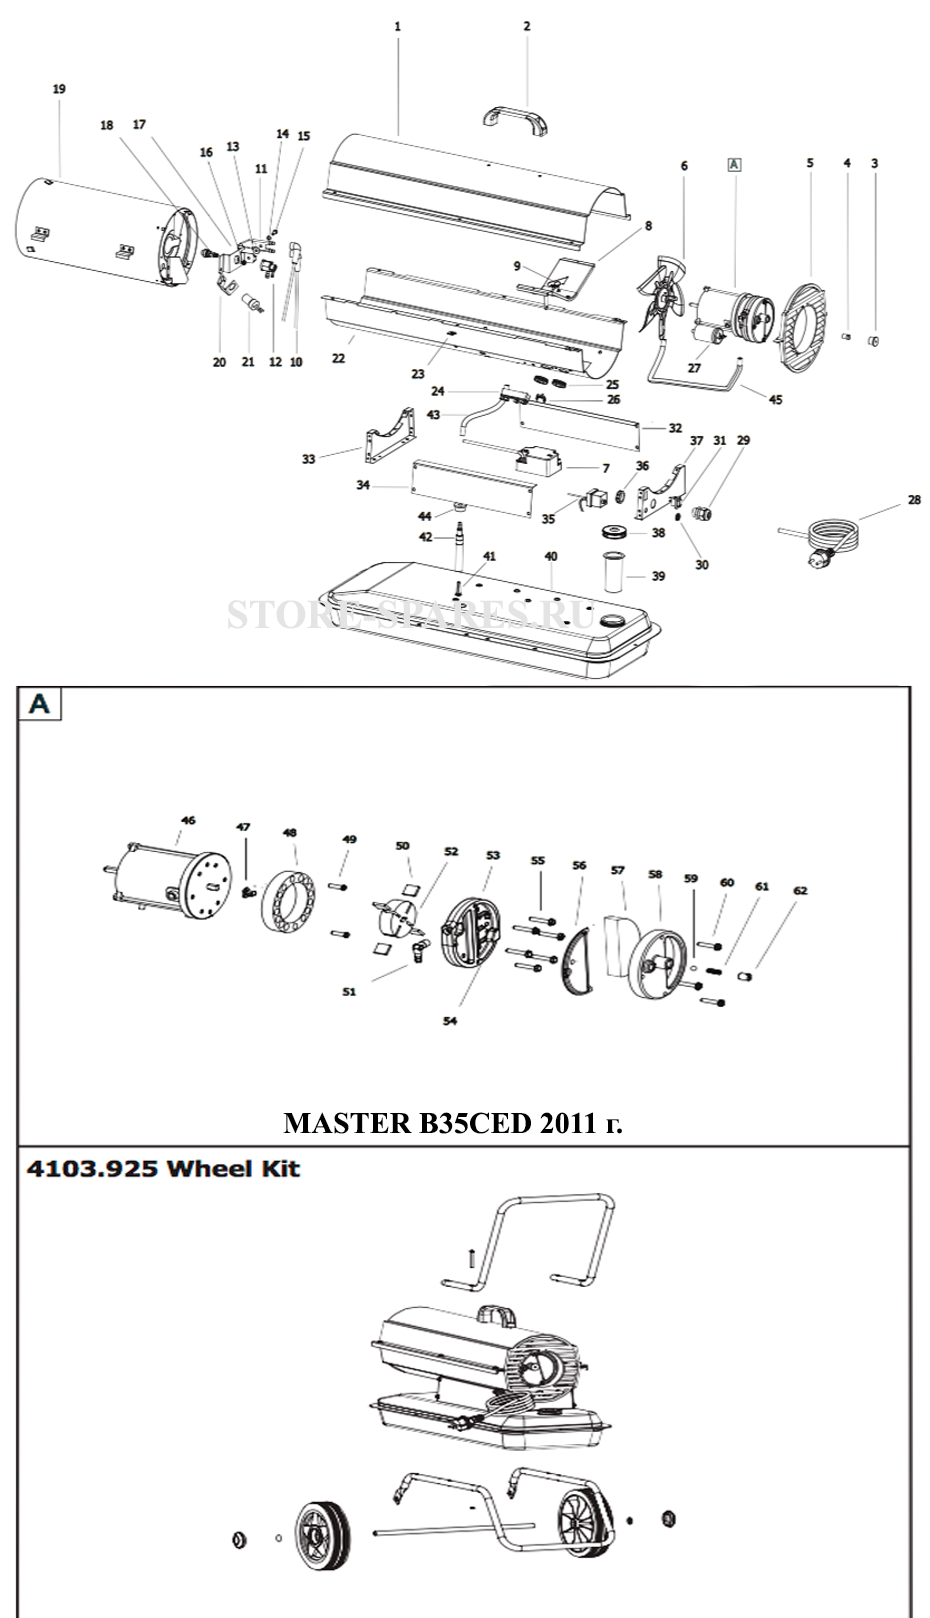 Нажмите чтобы посмотреть схему тепловой пушки MASTER B35CED 2011 г.в.